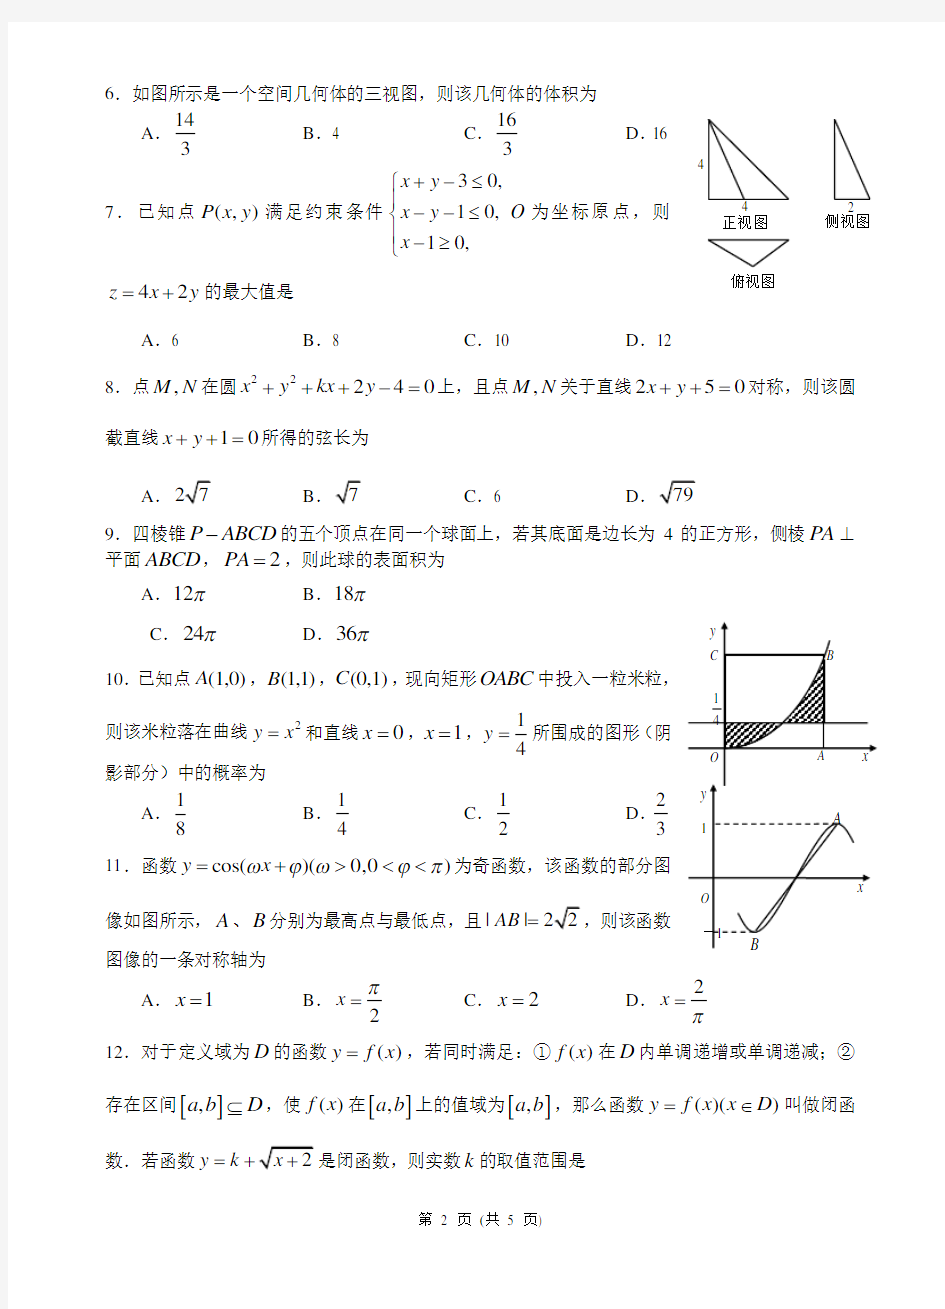 (完整版)100所名校高考模拟金典卷(四)理科数学